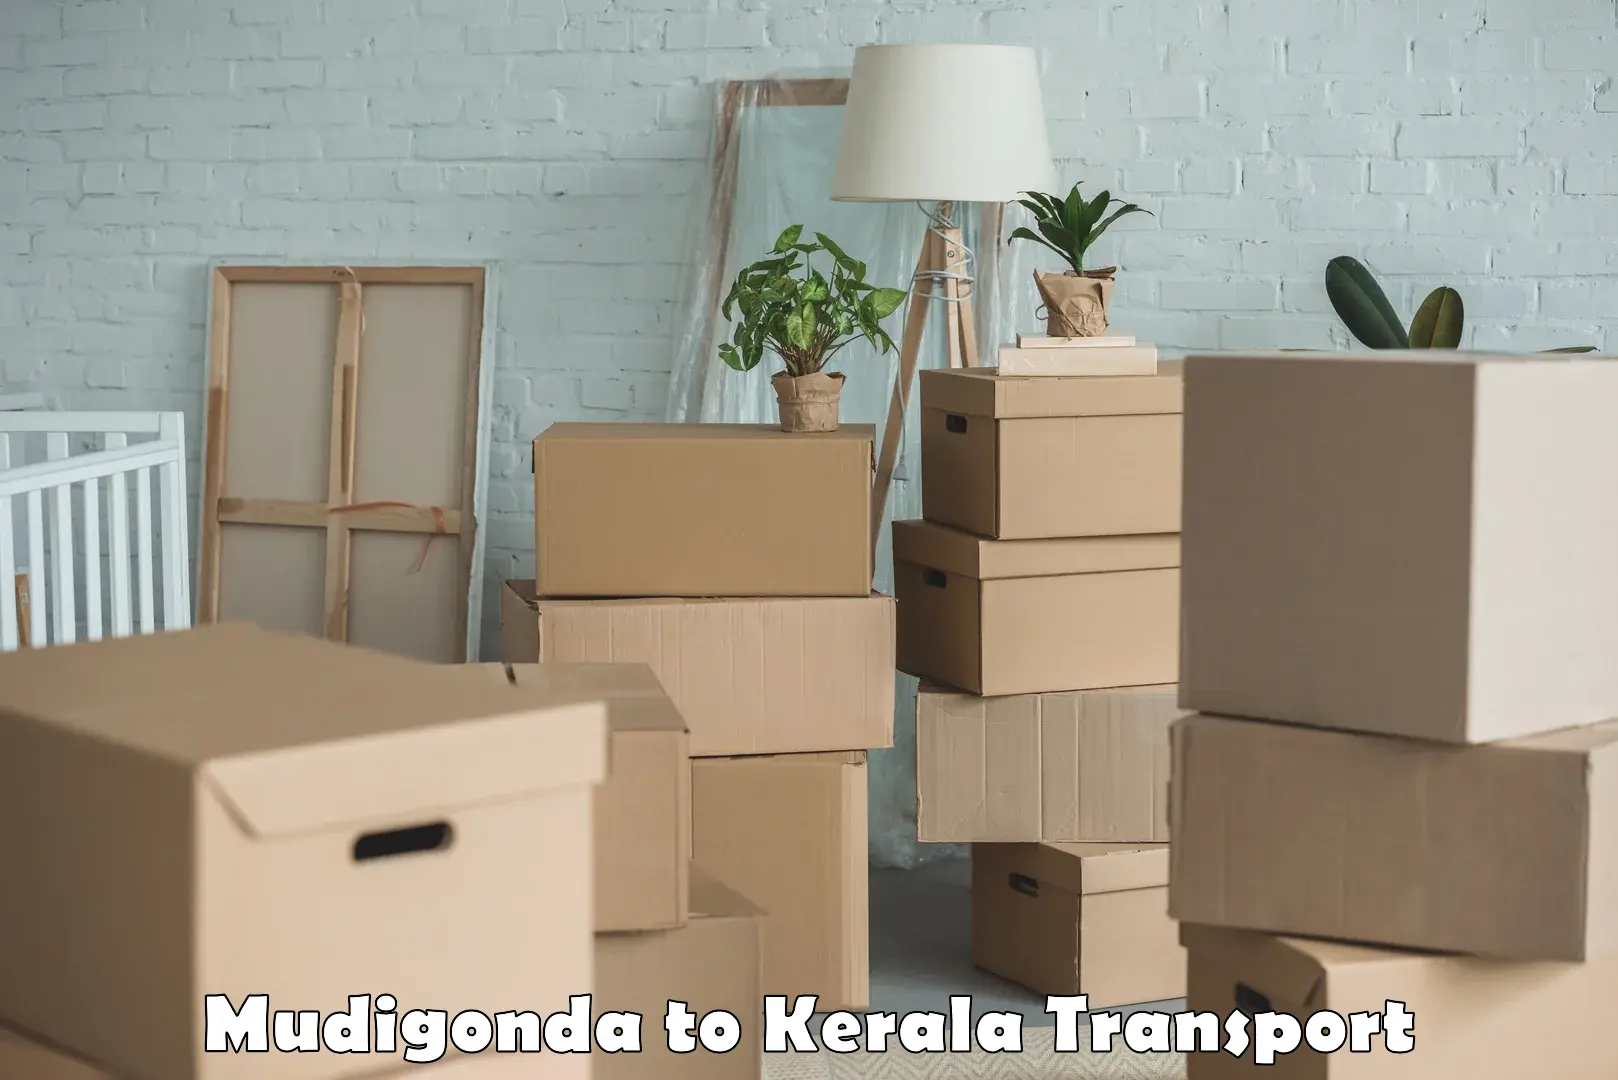 Part load transport service in India Mudigonda to Kanhangad